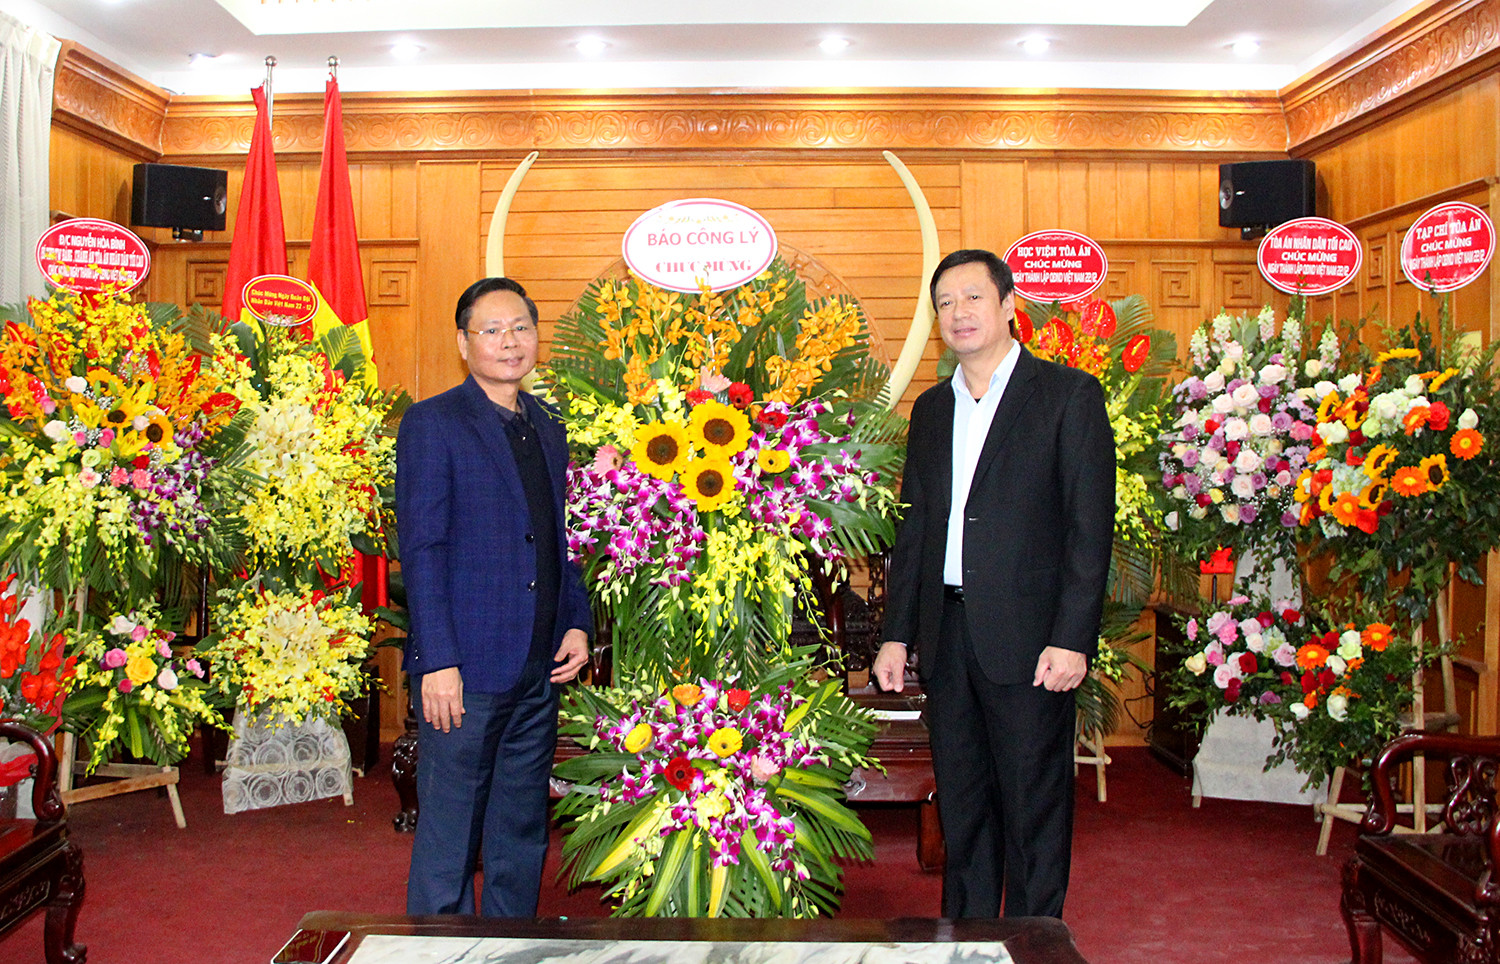 Báo Công lý chúc mừng Toà án quân sự Trung ương nhân kỷ niệm ngày thành lập QĐND Việt Nam